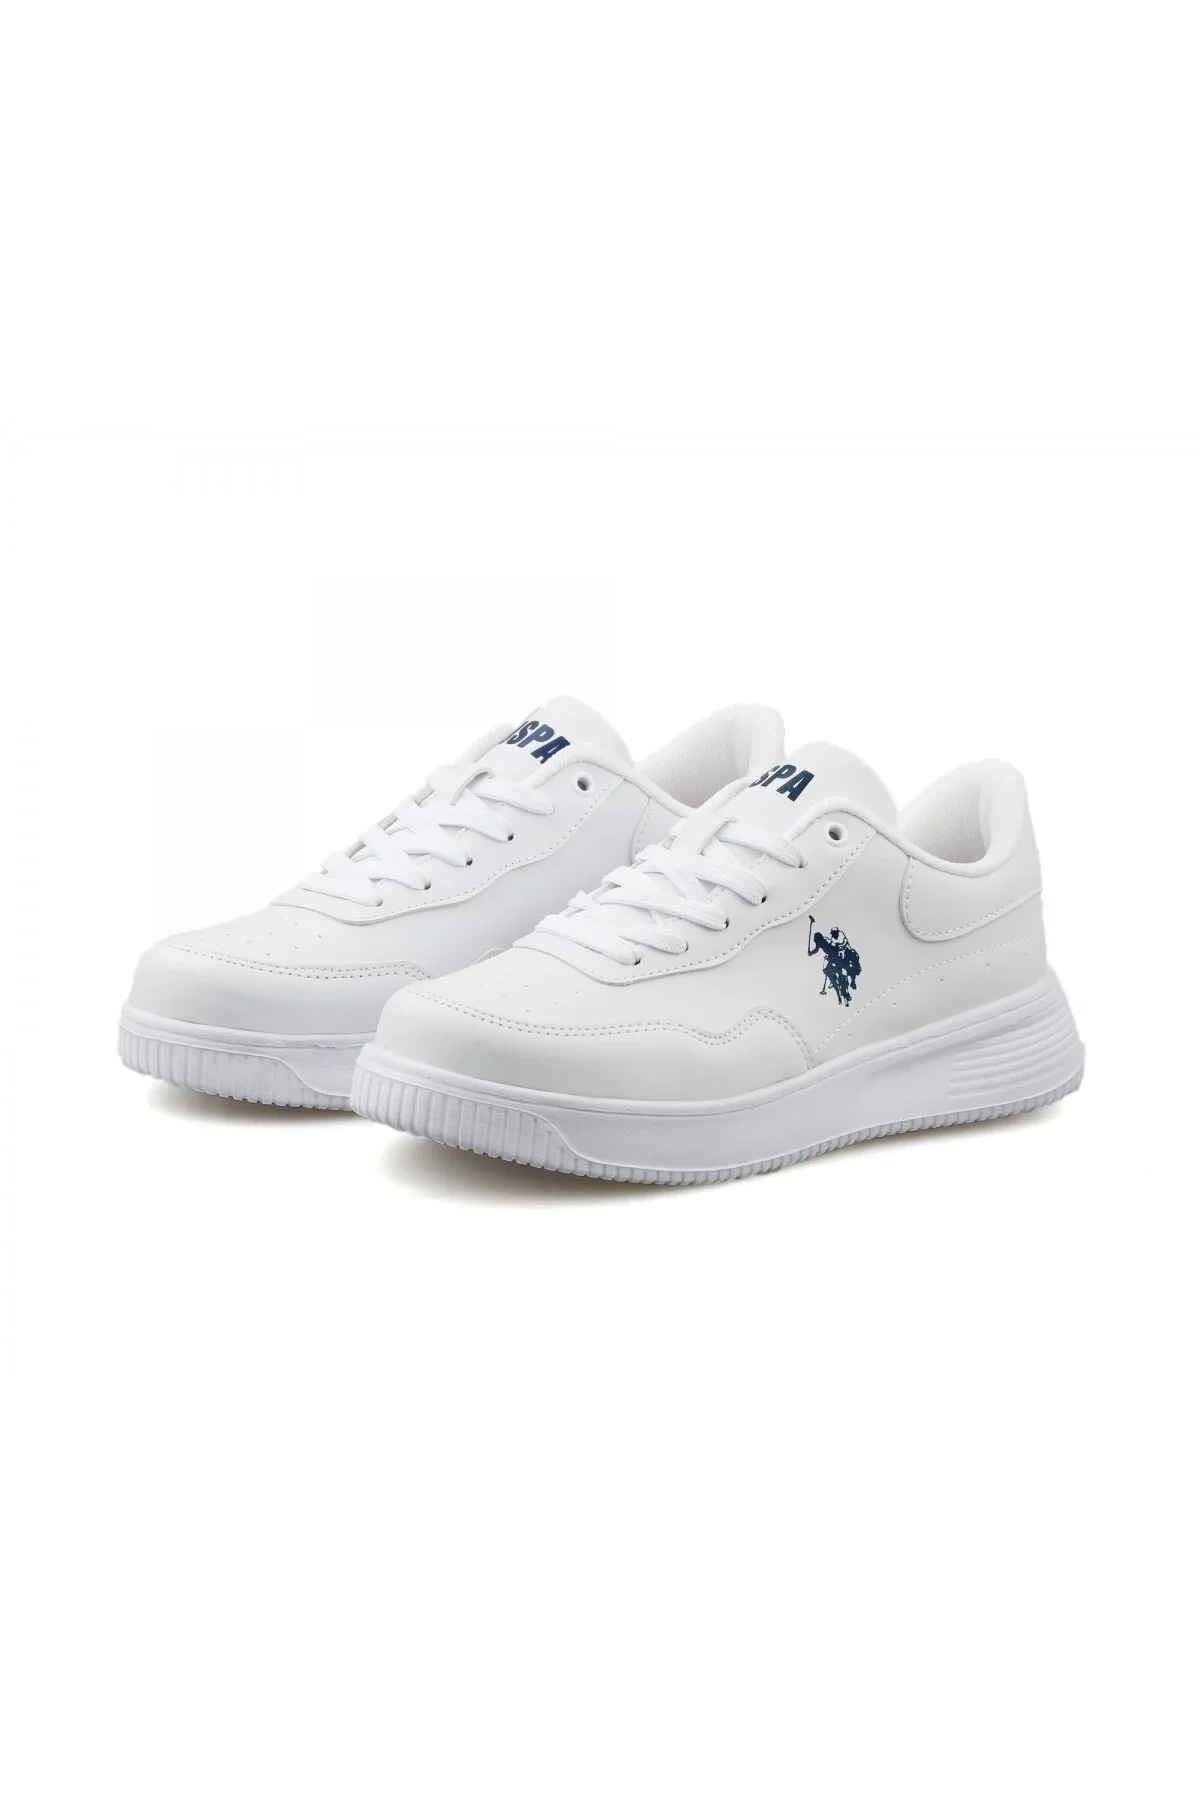 ABE 3FX Kadın Sneaker Spor Ayakkabı-Beyaz - 3